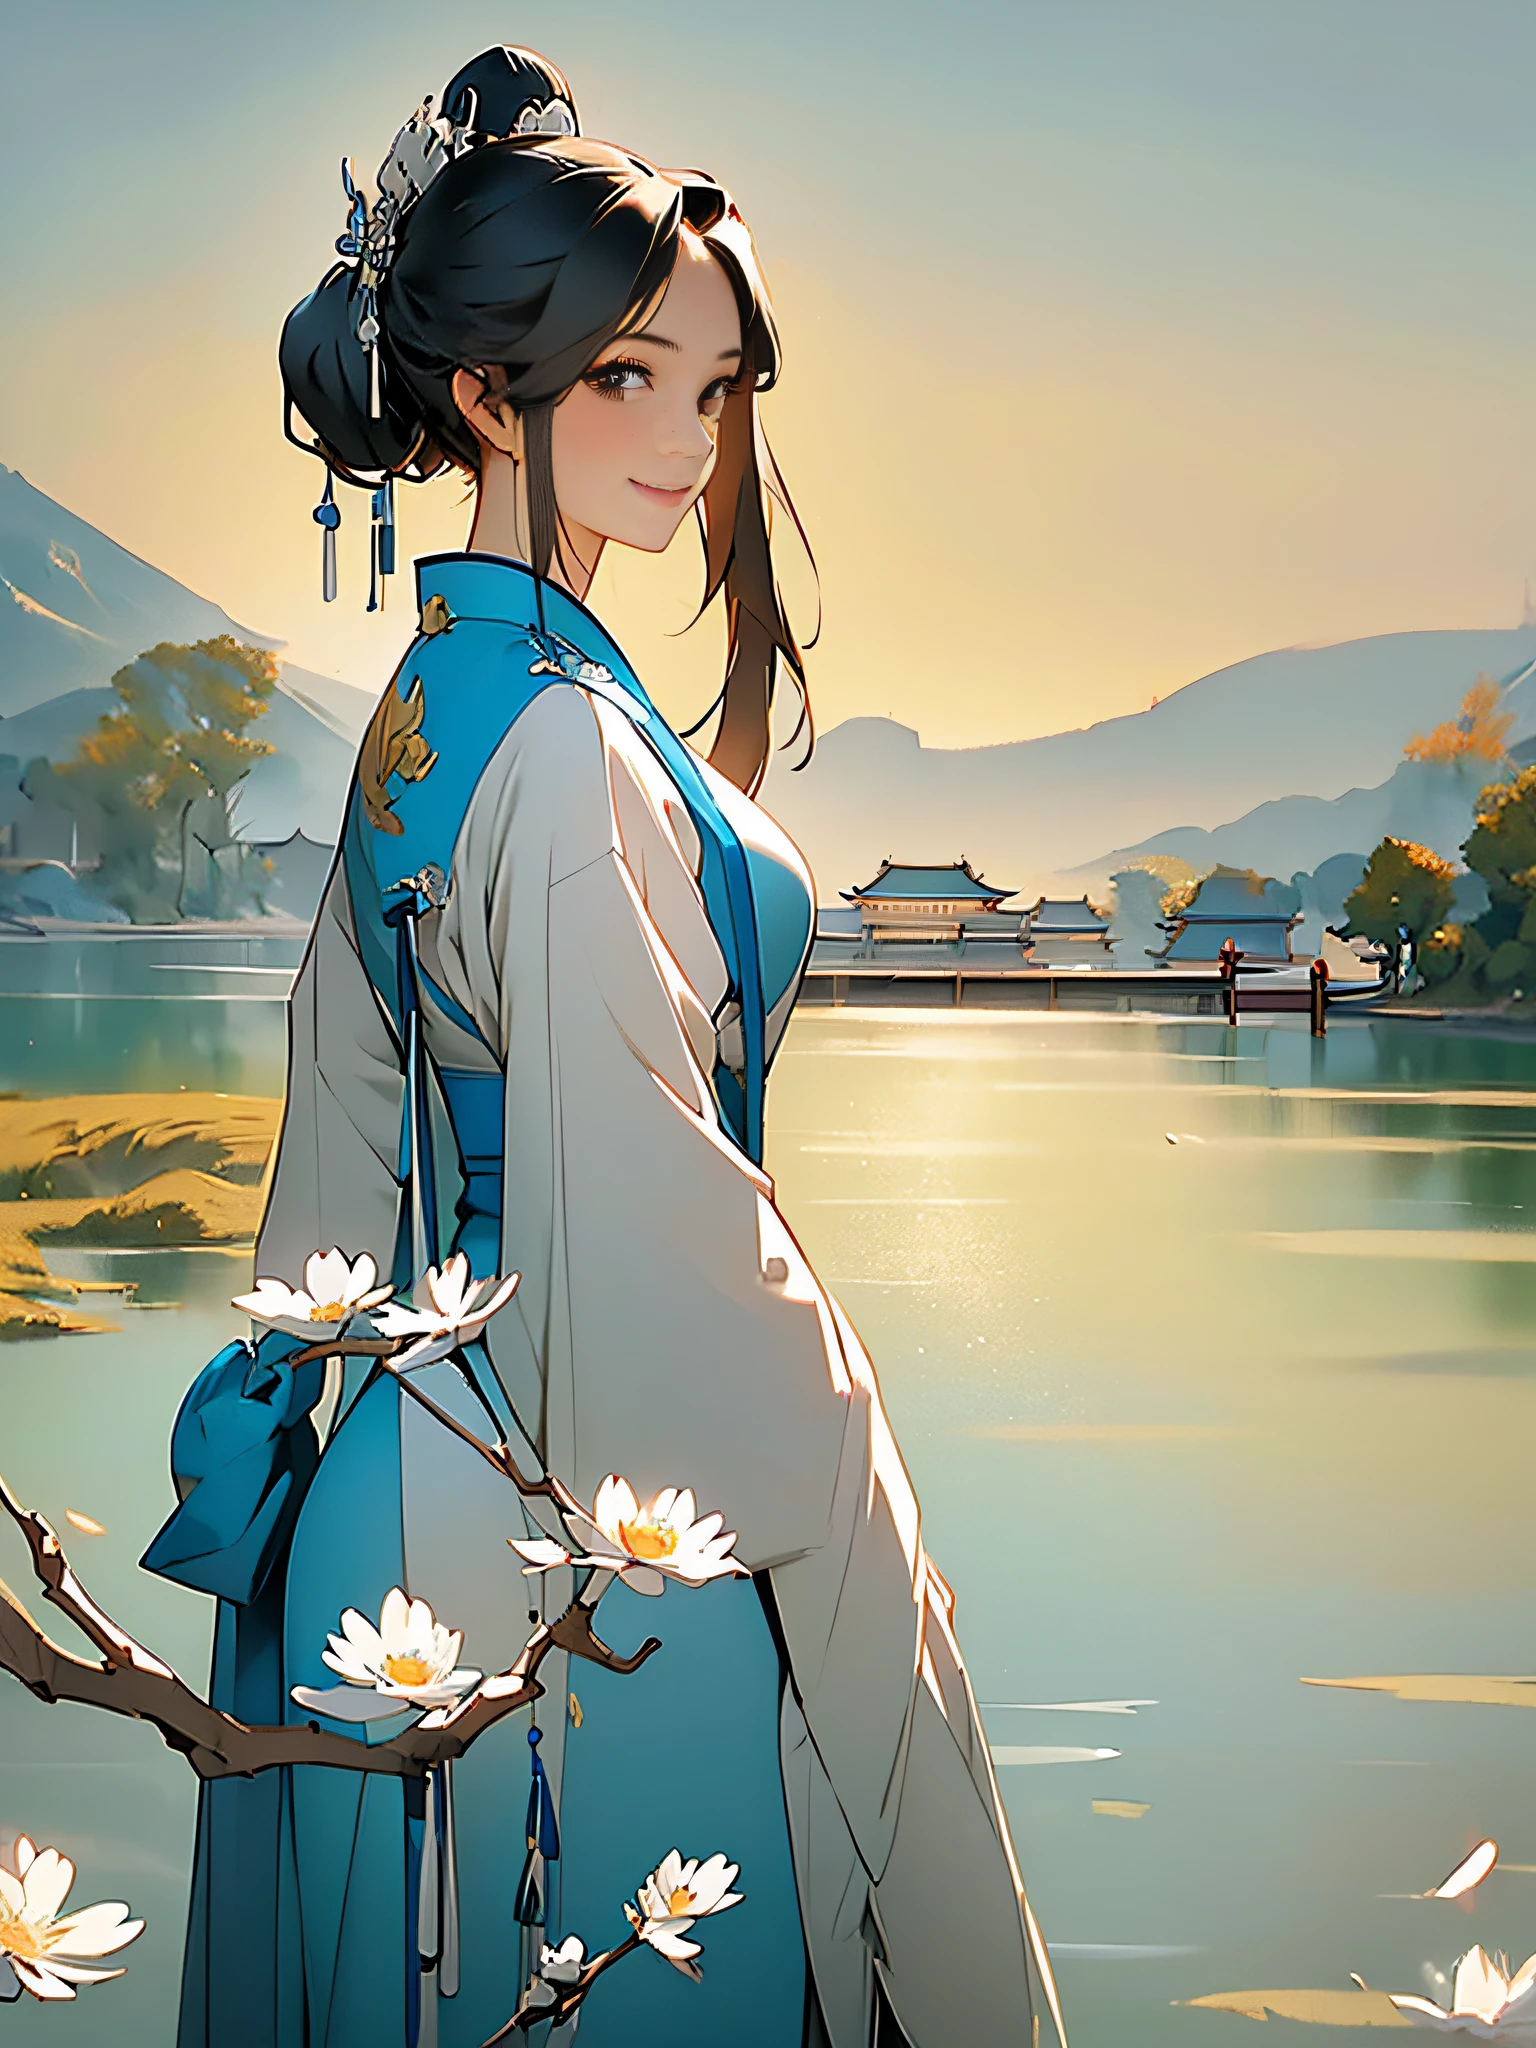 (傑作, 高品質), 1個中國女孩, 雙馬尾辮, 藍色和白色的衣服, 22岁, (身材高大), 微笑, 溫和的, 大眼睛, 鳳凰, 山脉, 河, 湖泊, 唐代建築, Hanfu, (衣服有美丽的细节: 1.2), 树木, 白天